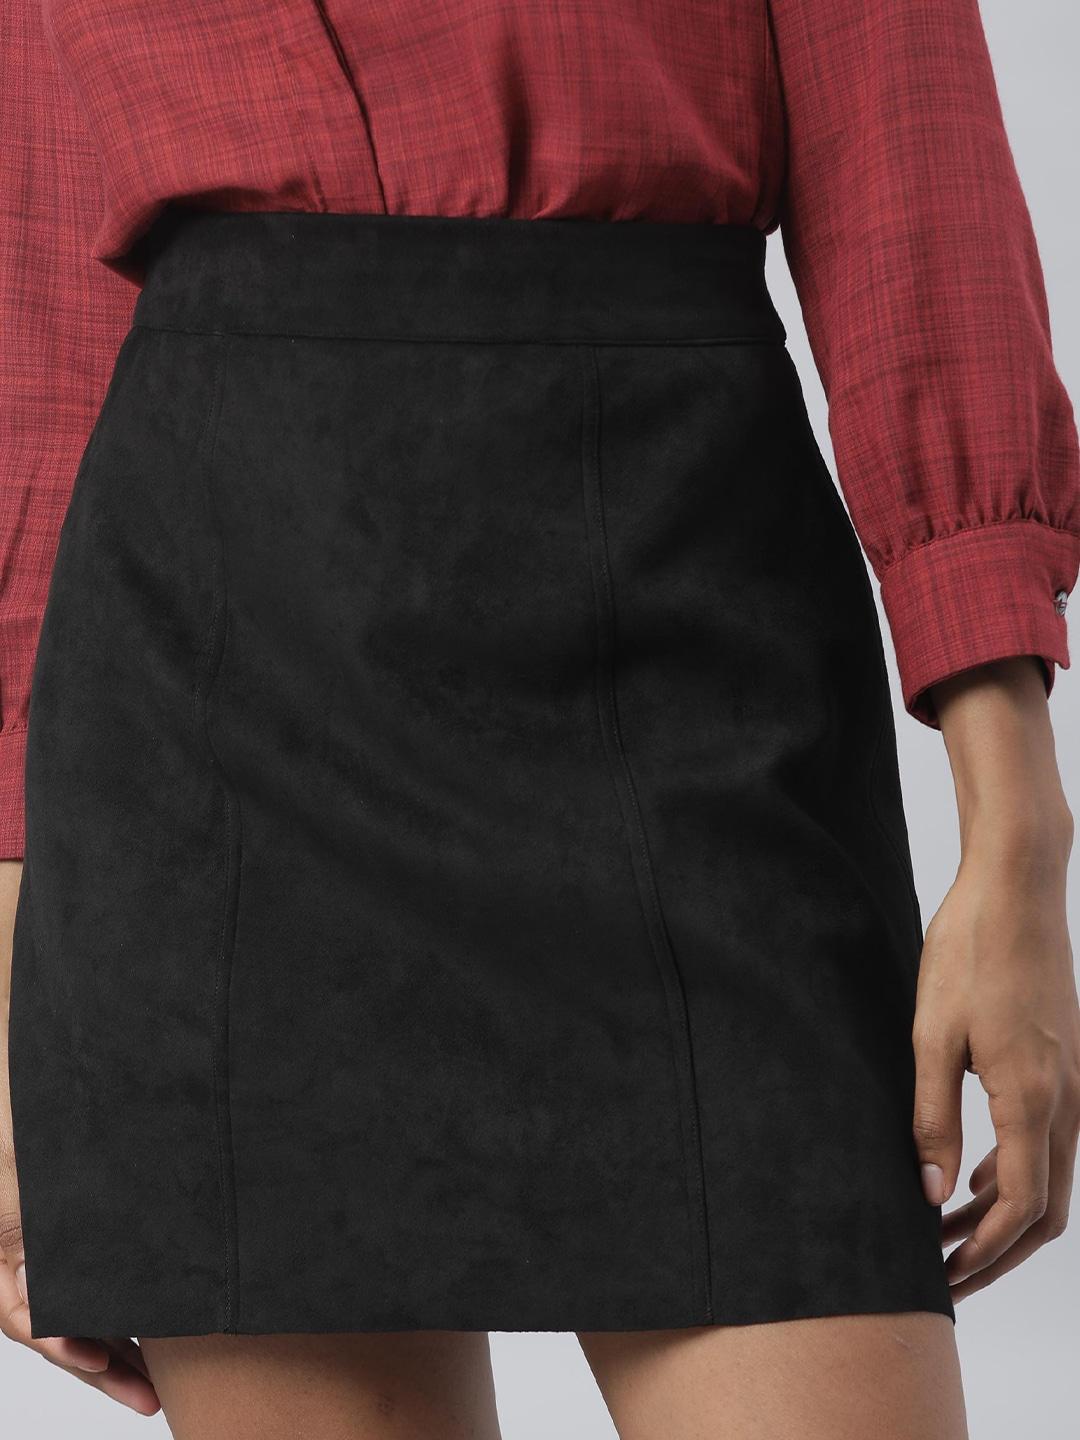 RAREISM Women Black Solid Above Knee-Length A-Line Skirt